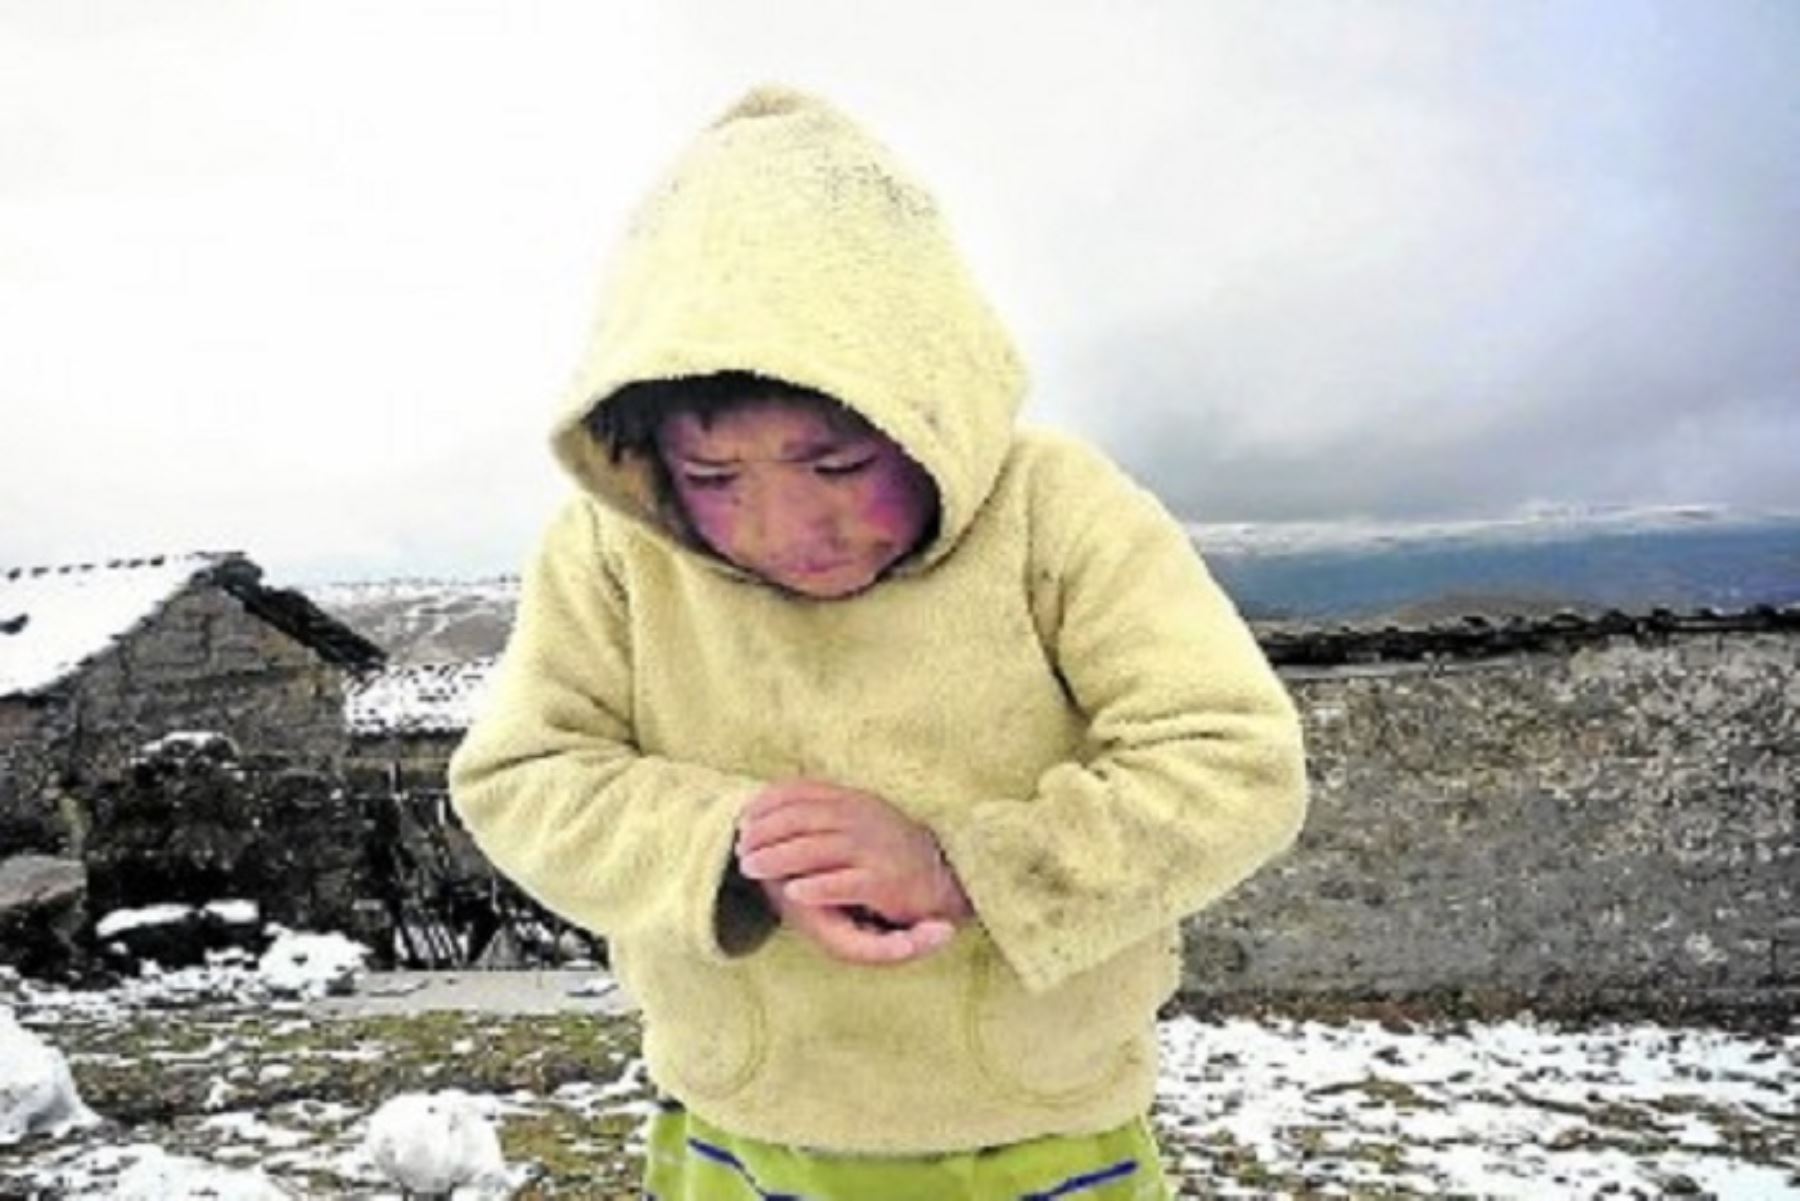 La temperatura más baja se presentará en zonas sobre los 4200 metros de altura, con registros inferiores a -15 grados Celsius. Foto: Los Andes